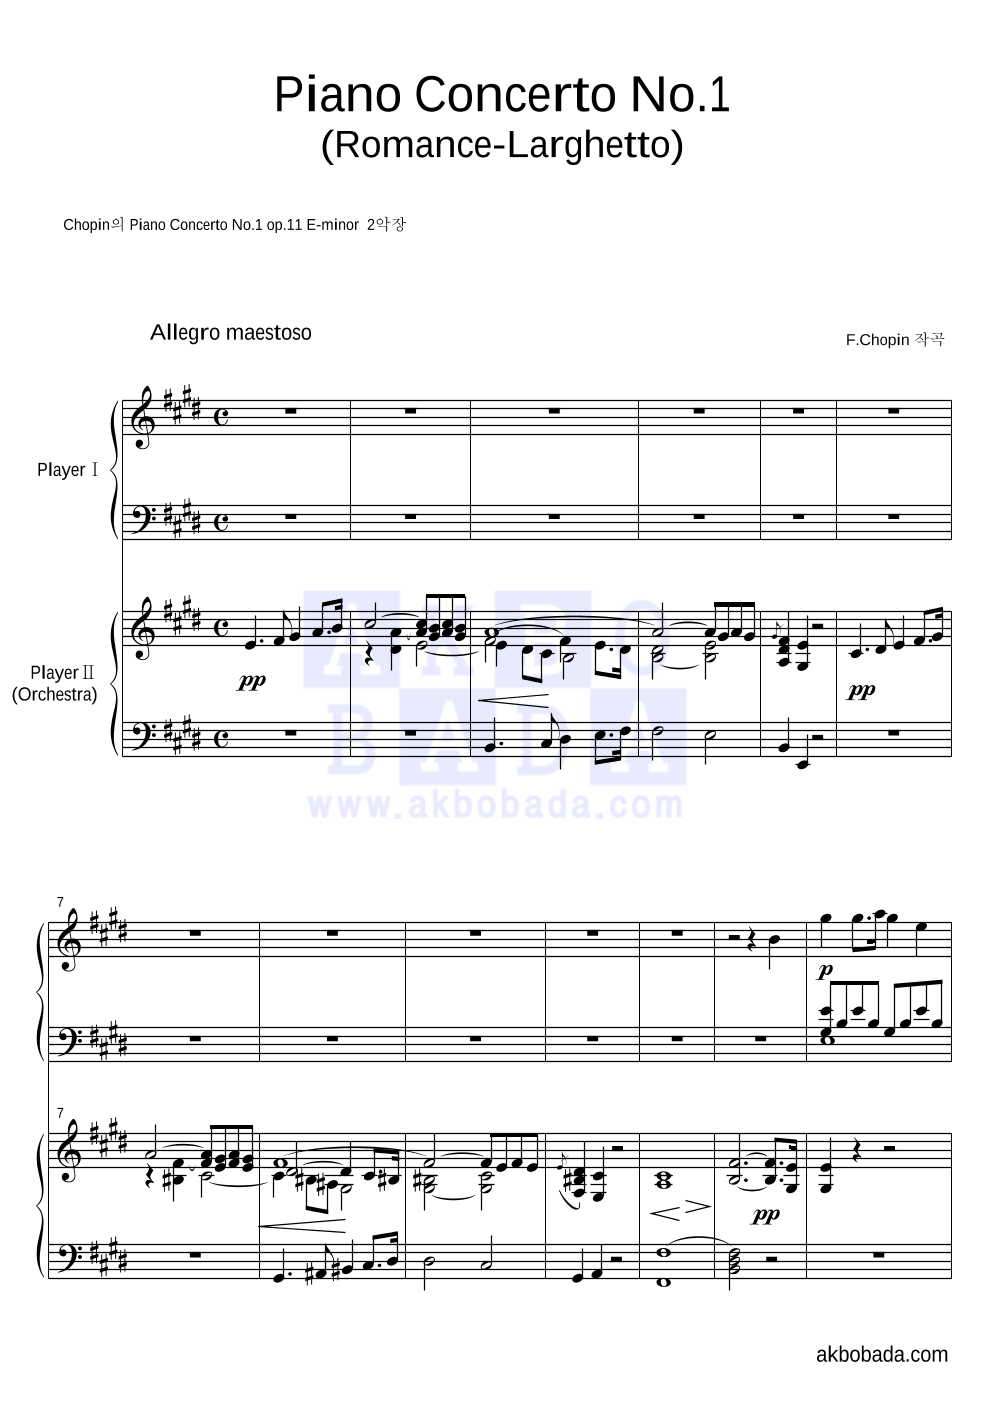 쇼팽 - 피아노 협주곡 1번 2악장 로망스-라르게토 피아노 2단 악보 